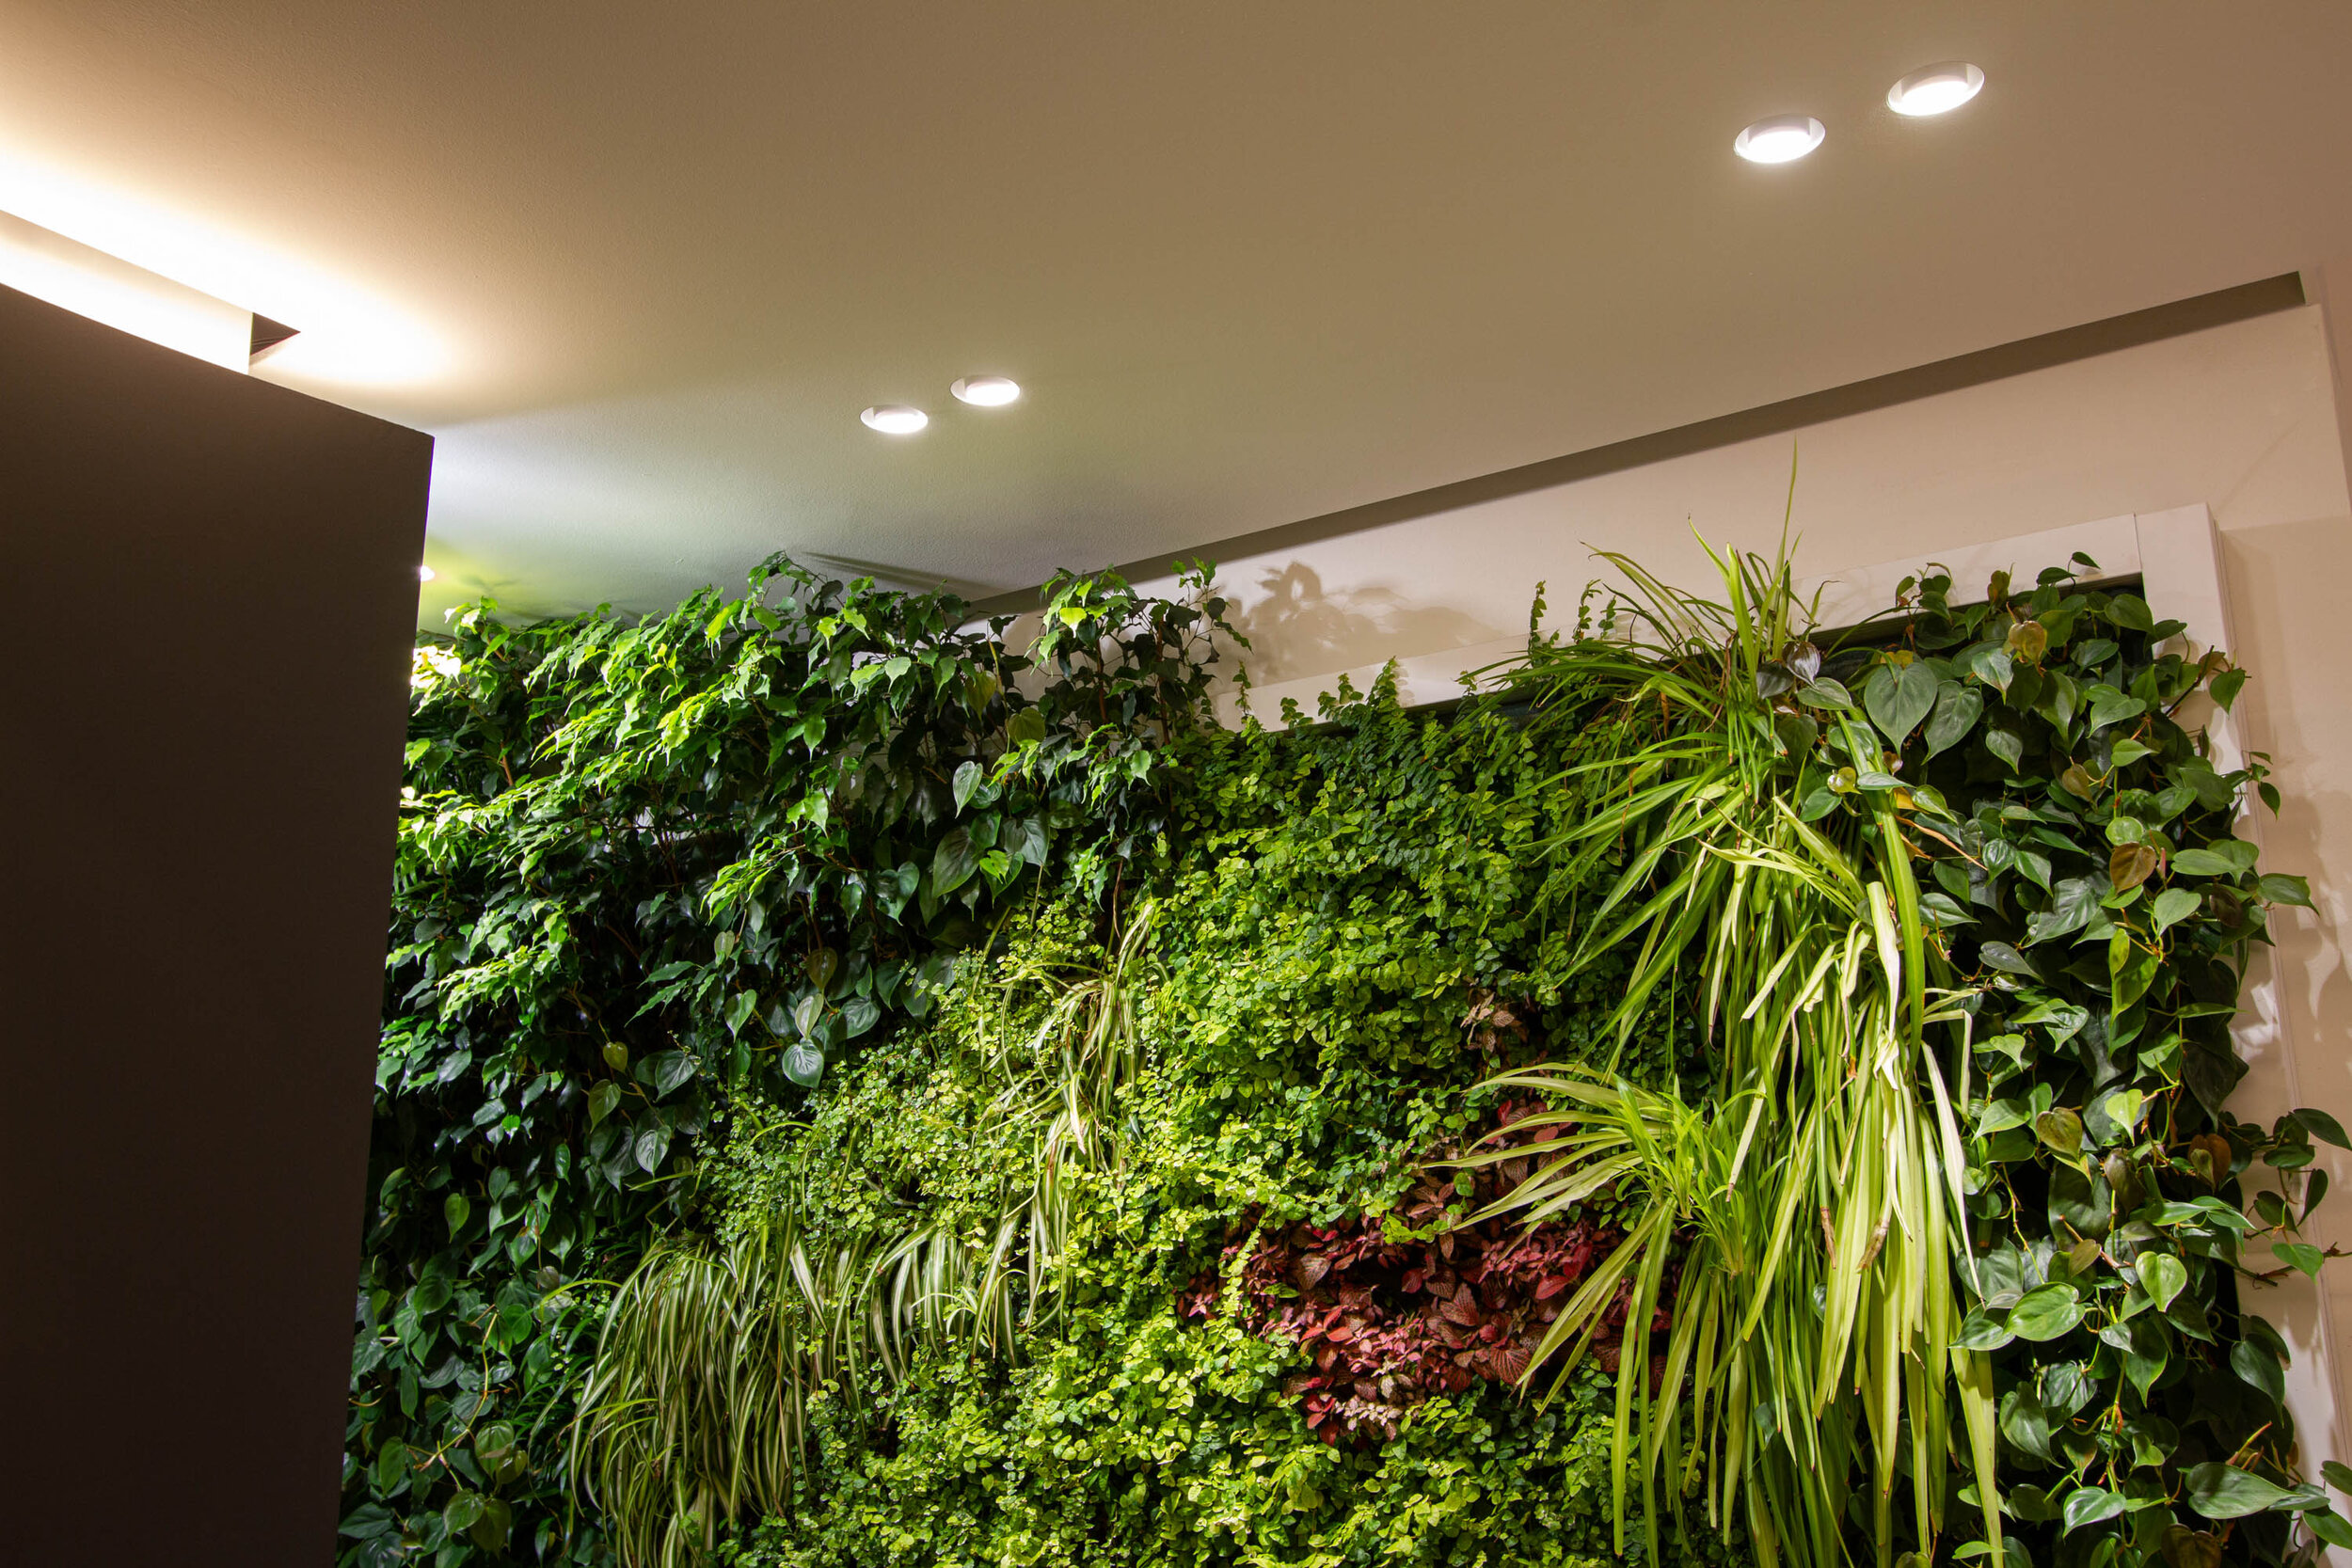 studio-cavazza-garden-vertical-wall-green-sundar-italia-005.JPG